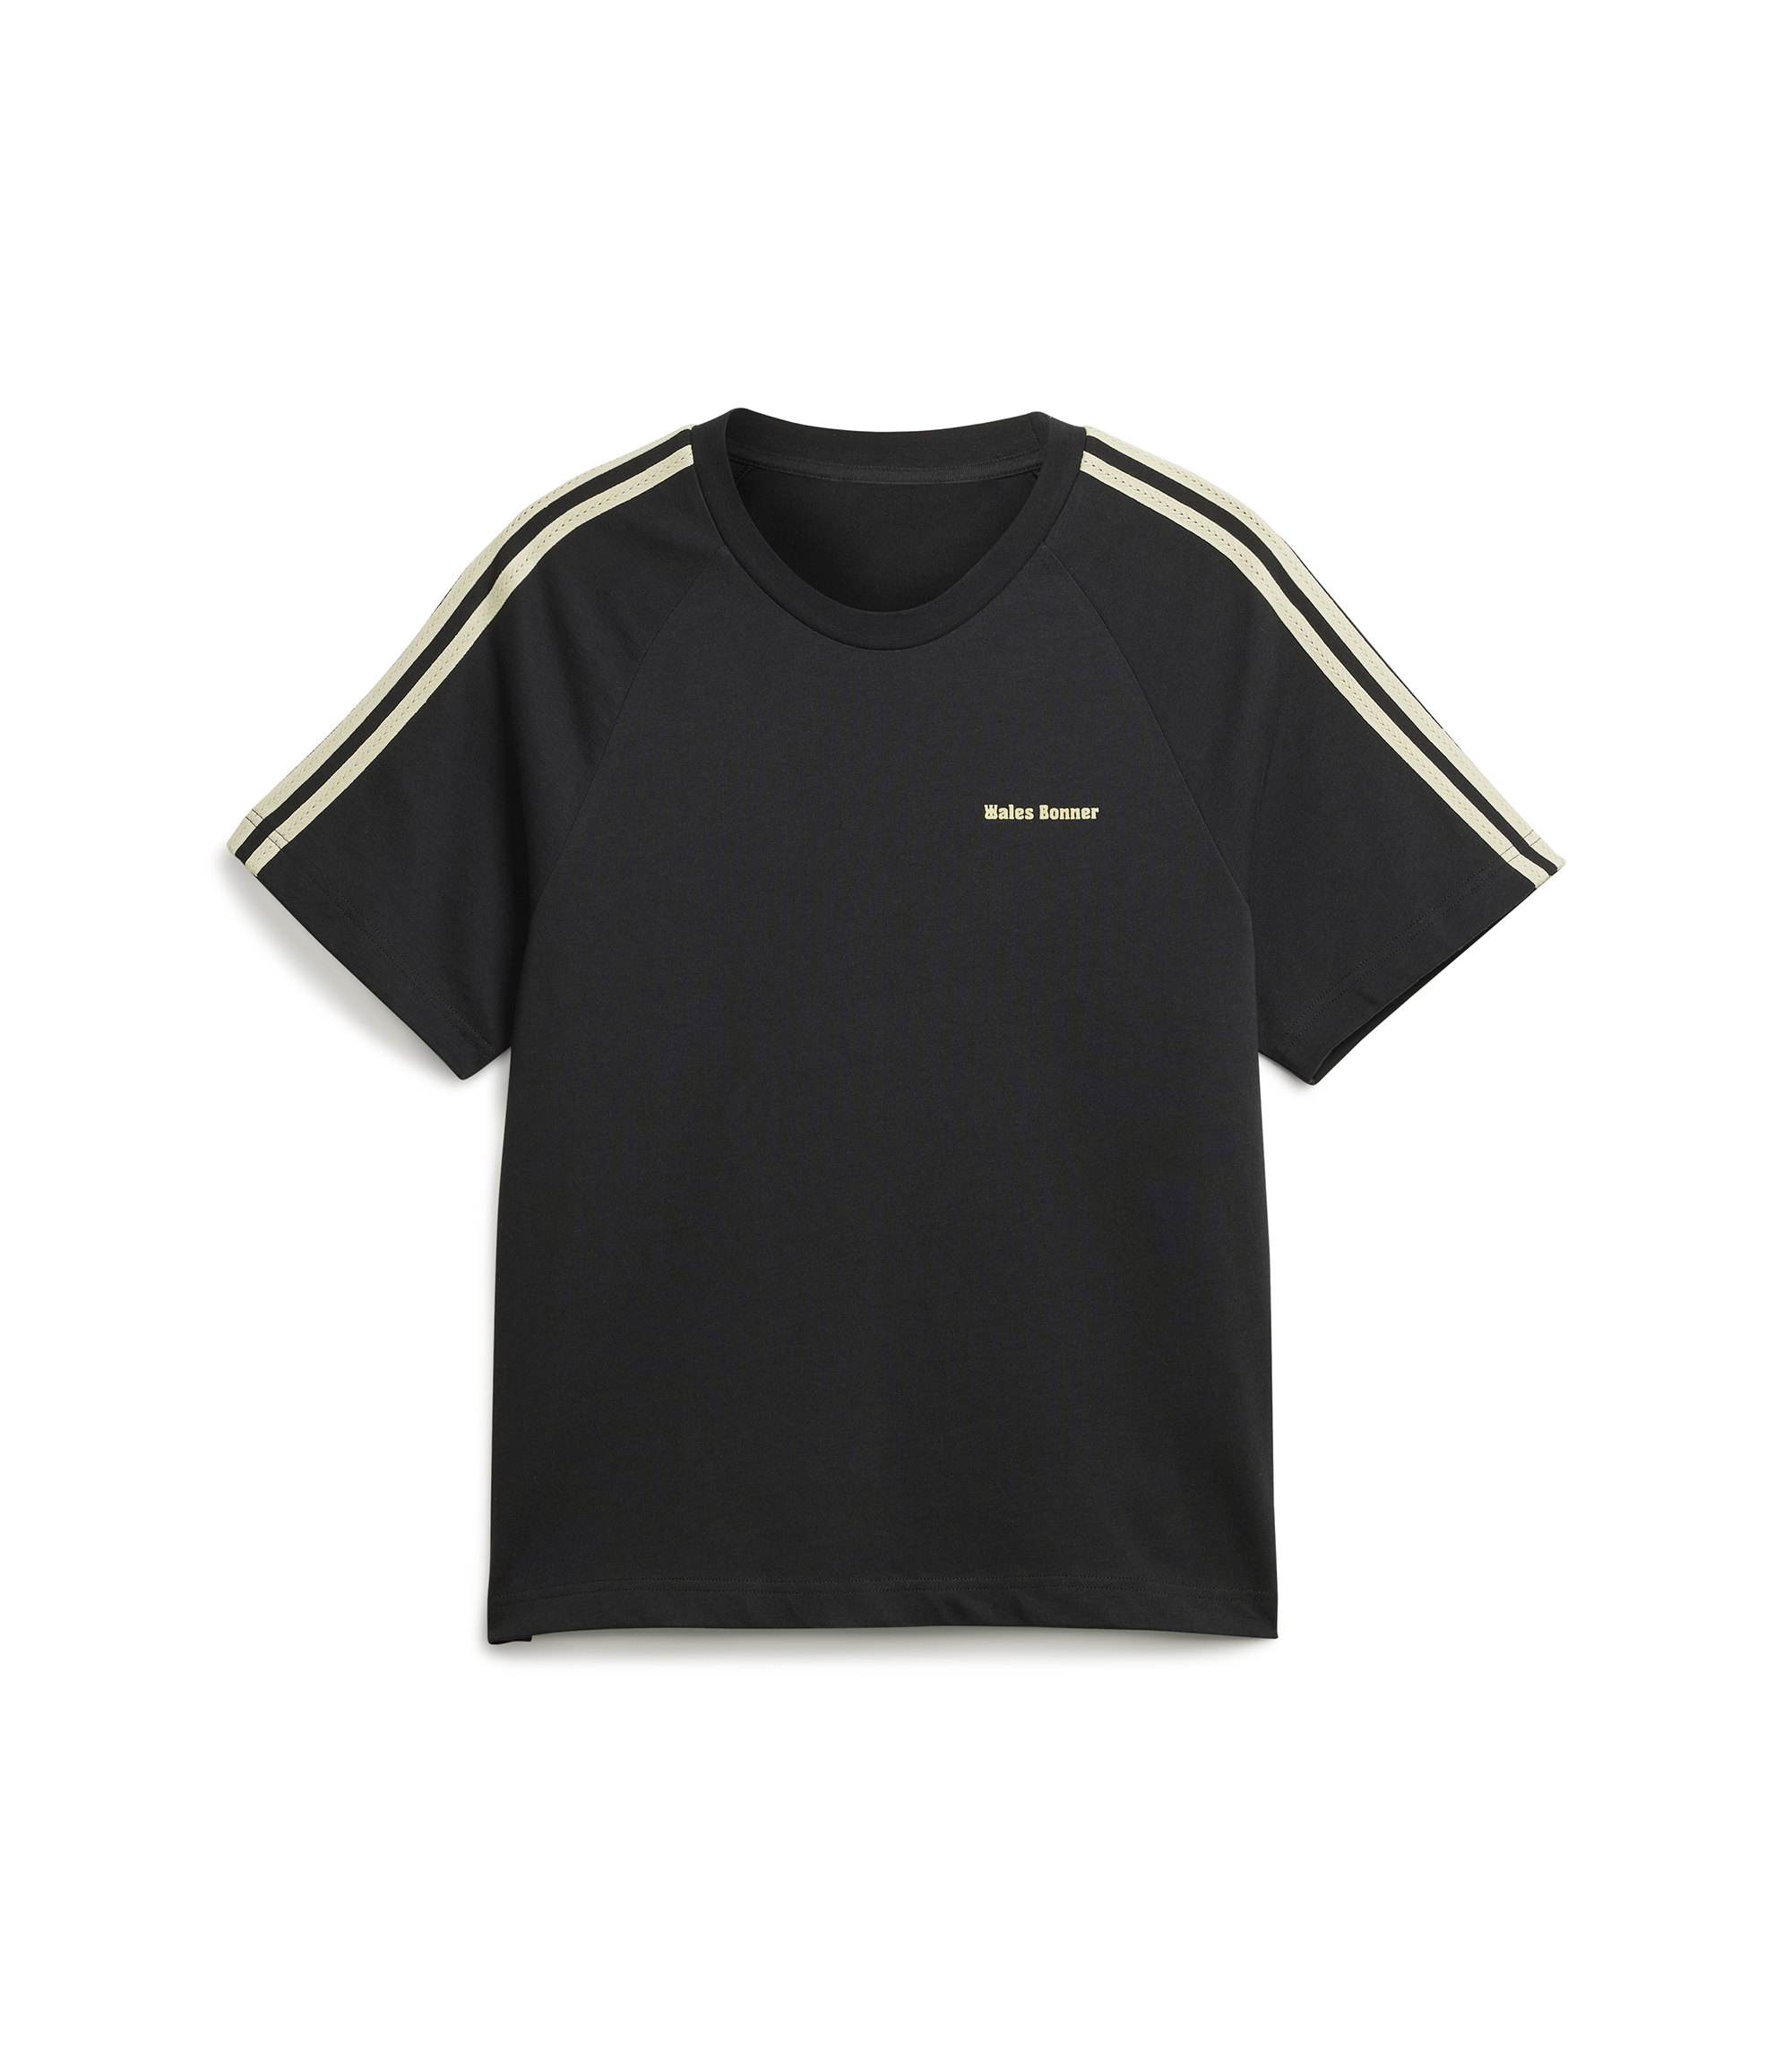 Wales Bonner S/S T-Shirt - Black